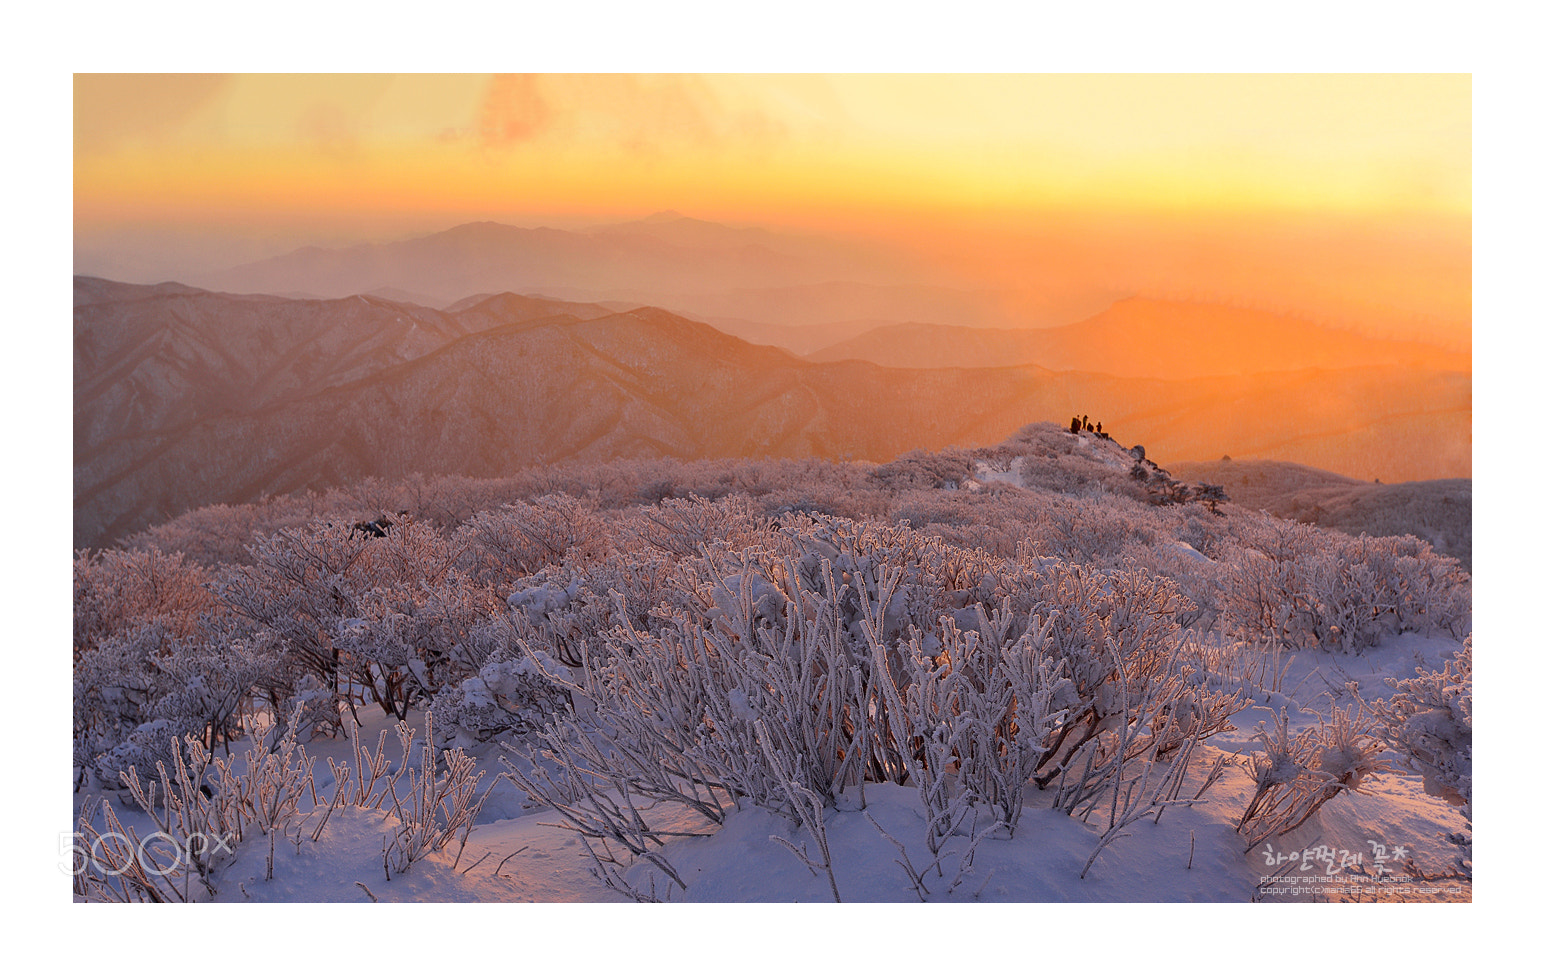 Nikon D800 + Nikon AF-S DX Nikkor 55-200mm F4-5.6G ED sample photo. Winter sunrise photography